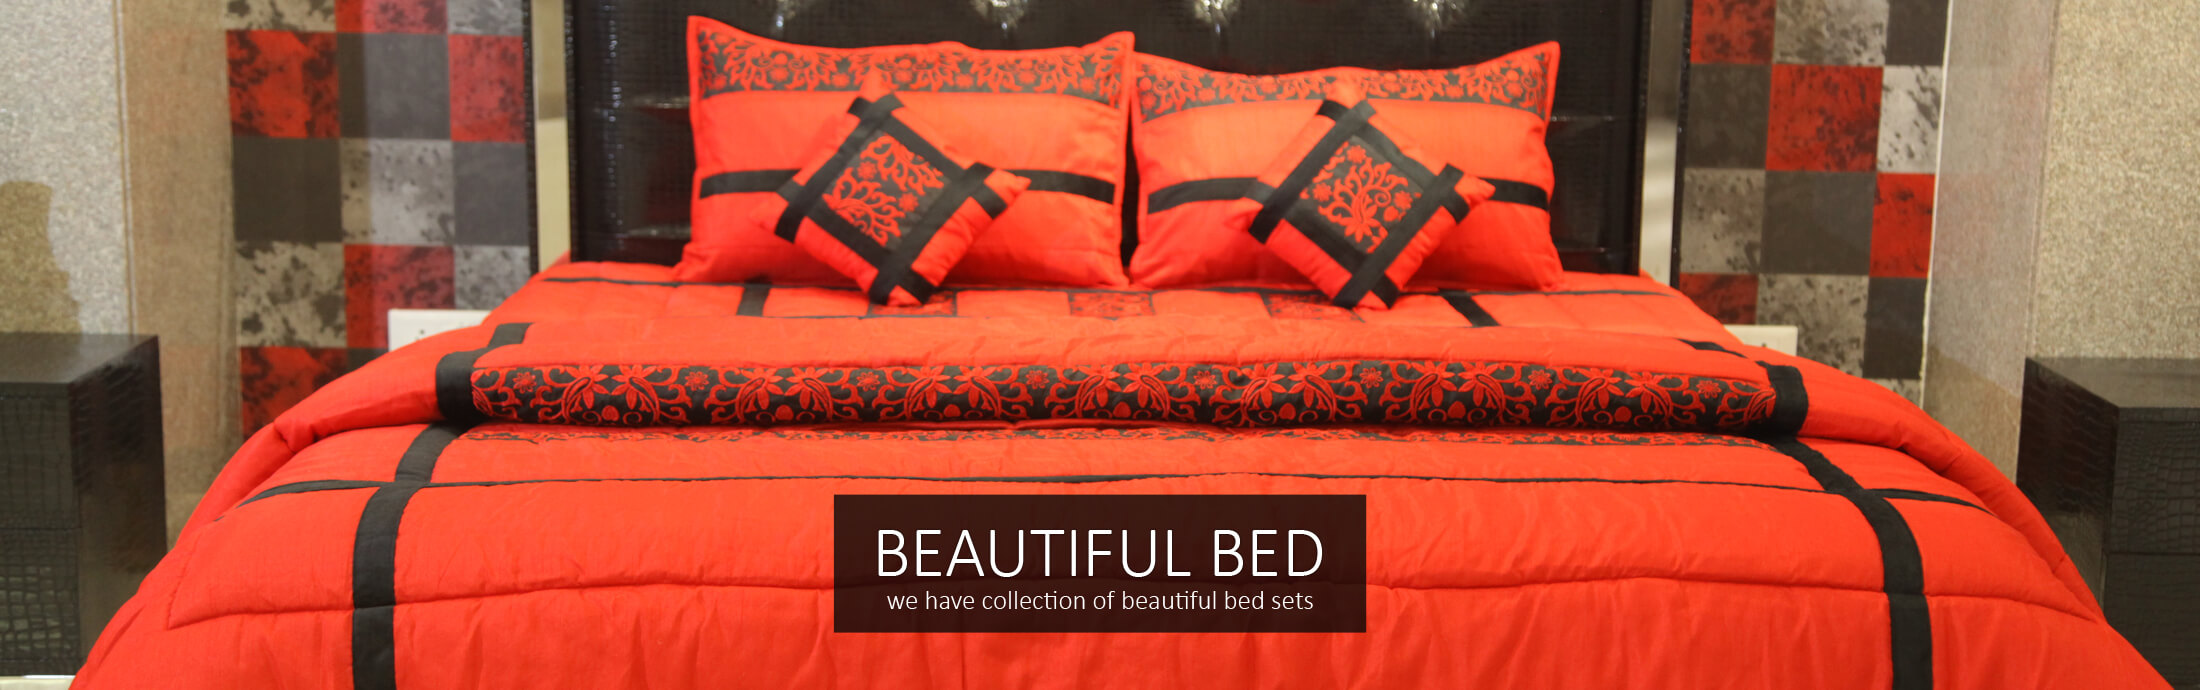 Beautiful Beds